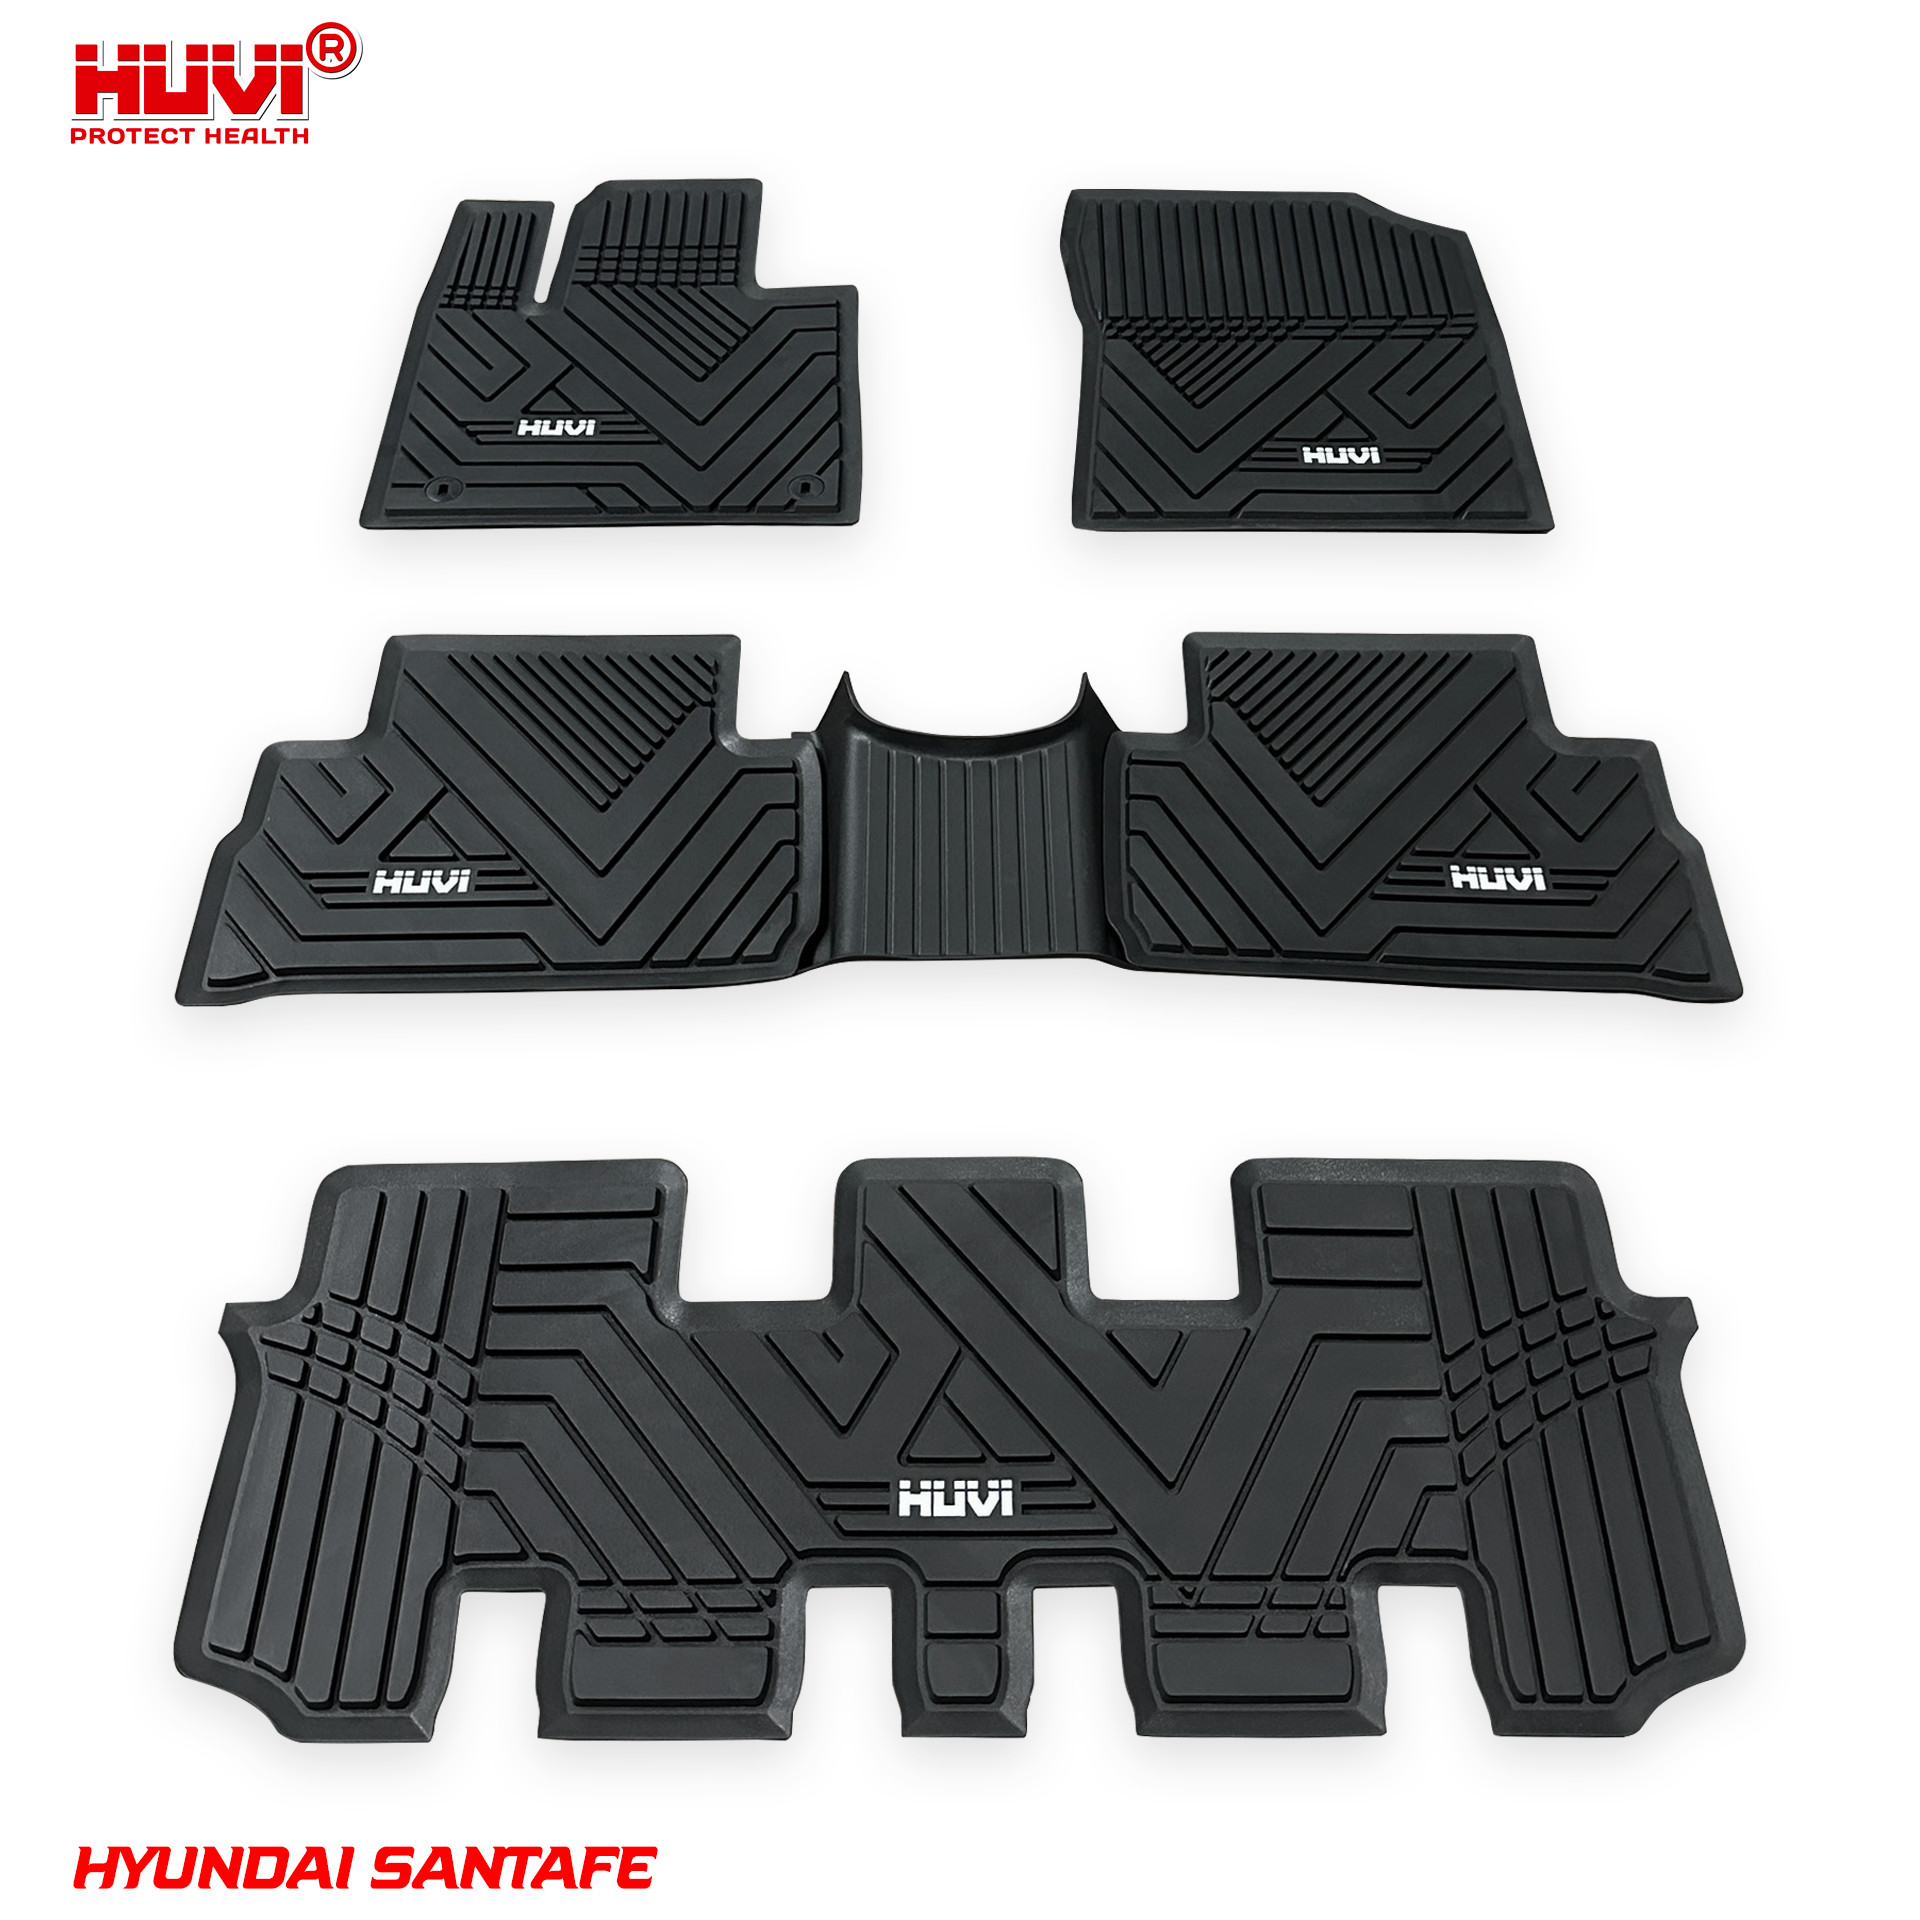 Lắp đặt thảm lót sàn ô tô xe Hyundai Santafe đúng cách an toàn